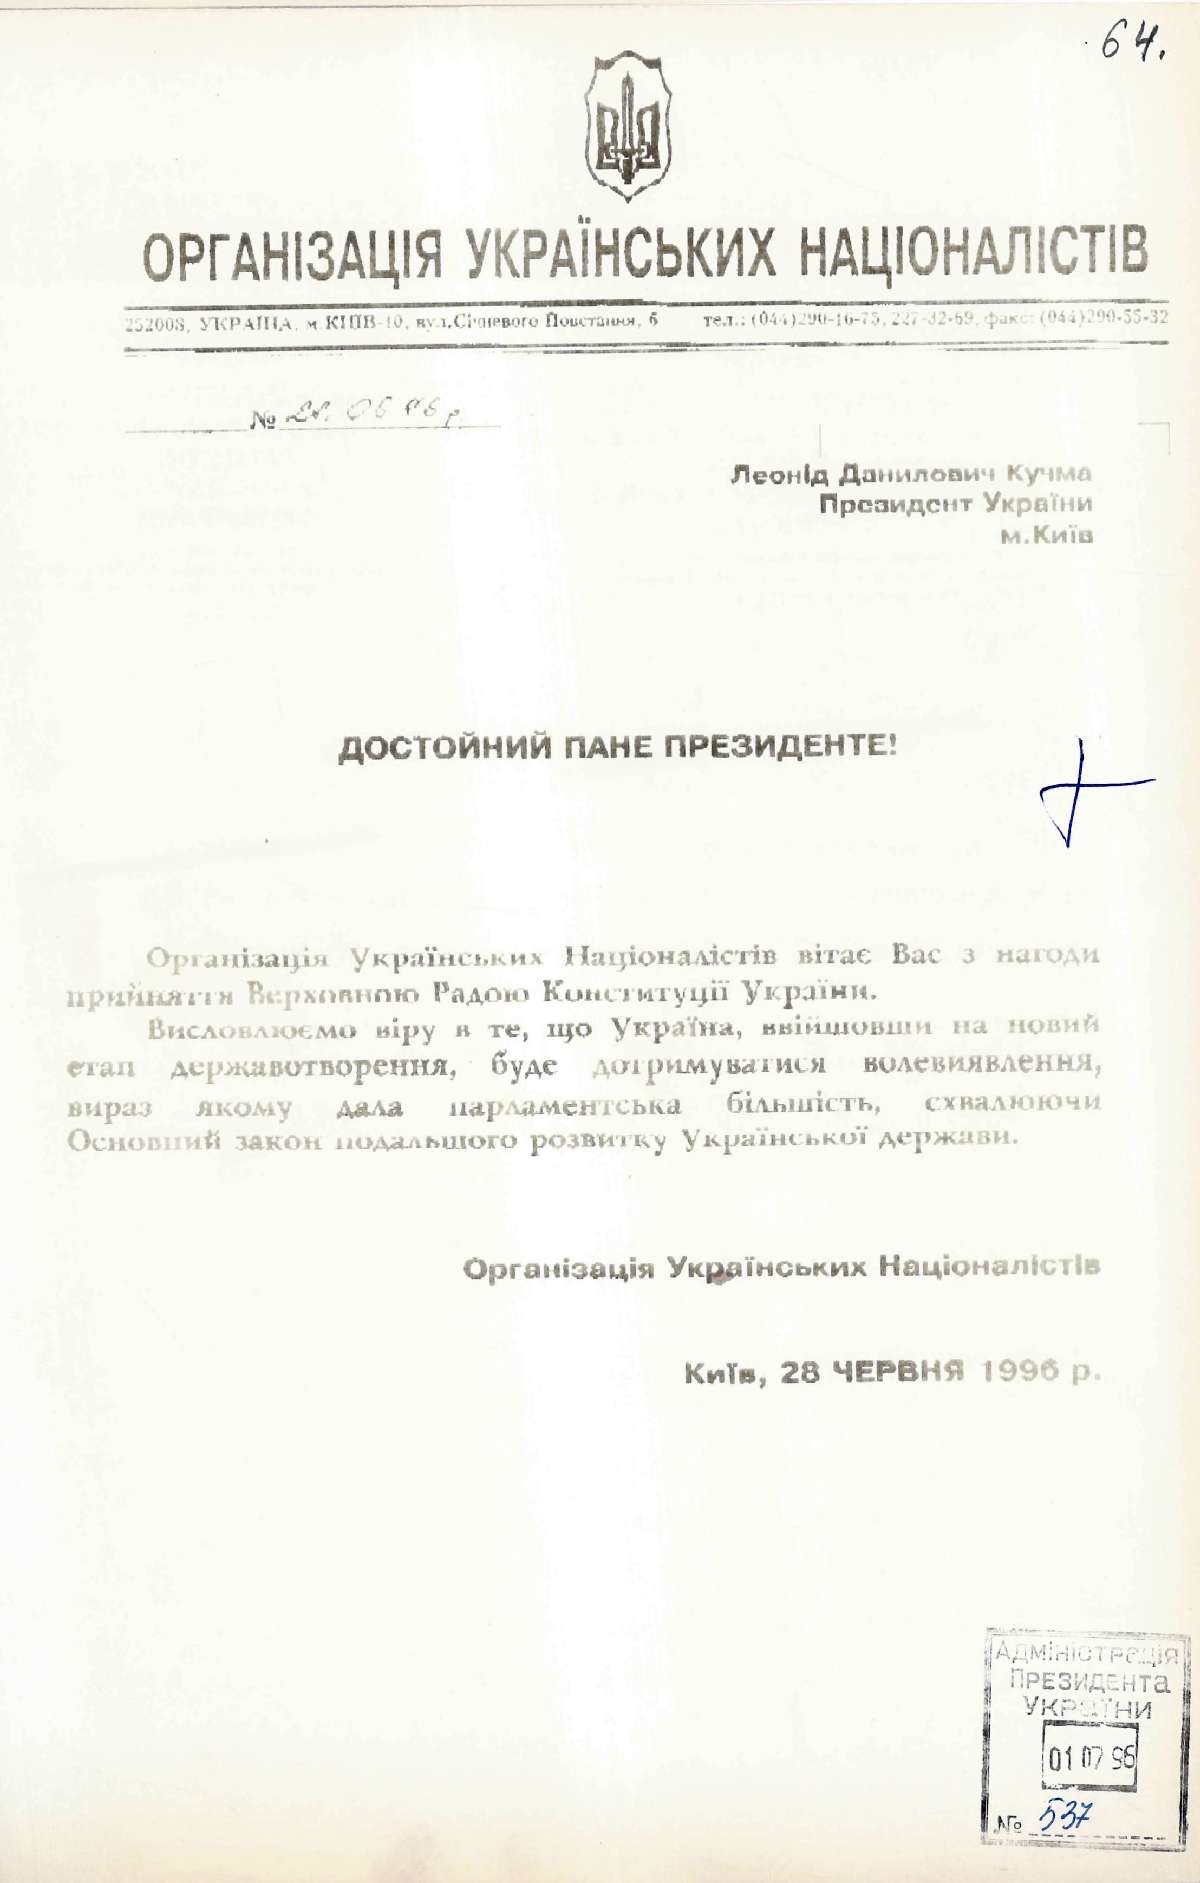 Привітання від Організації Українських Націоналістів Президента України з прийняттям Конституції України. 28 червня 1996 р.